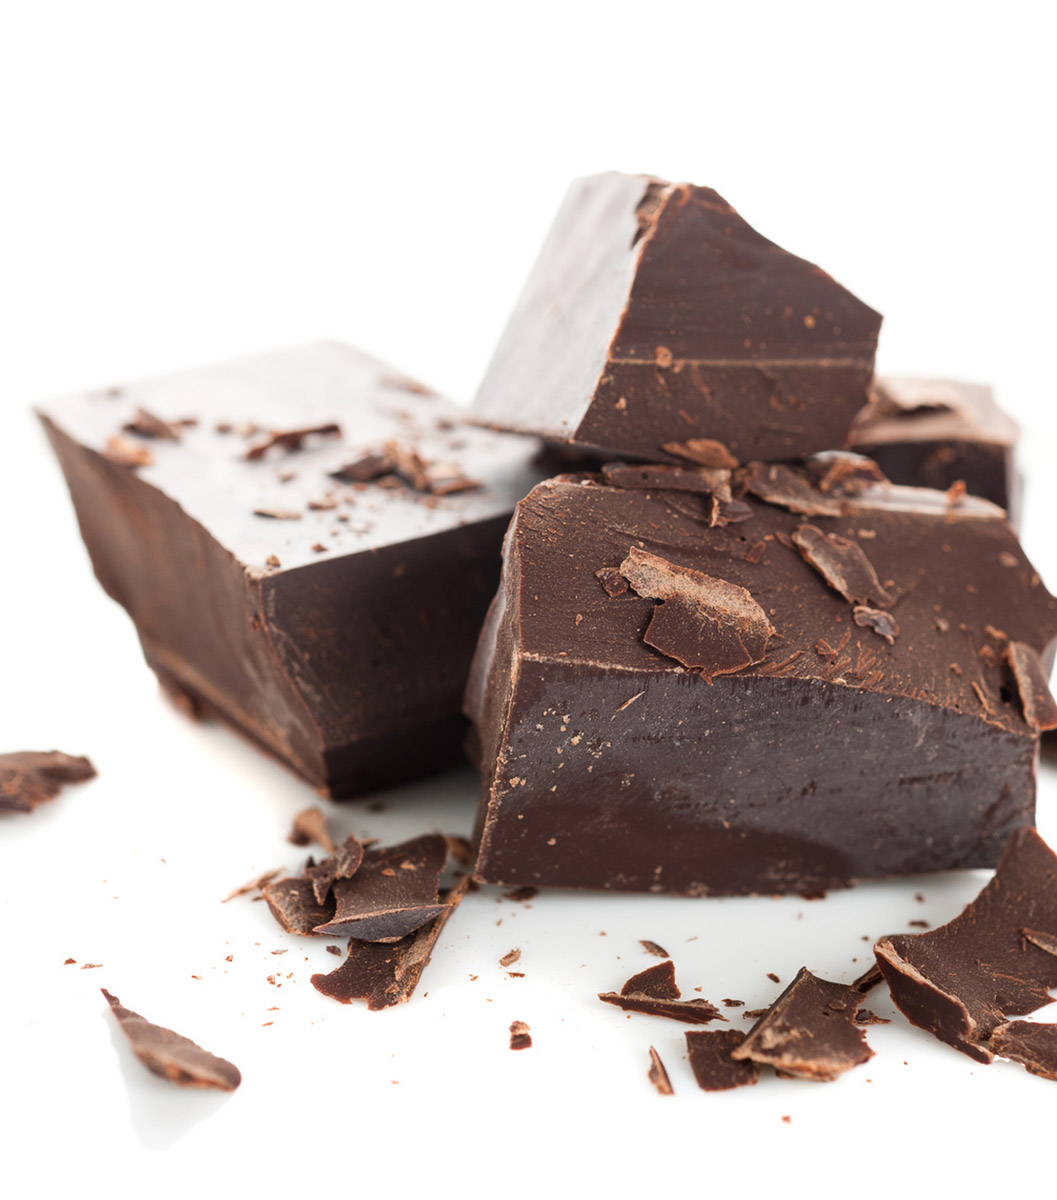 Cacao Mass nguyÃªn liá»‡u lÃ m Chocolate - 400k/kg